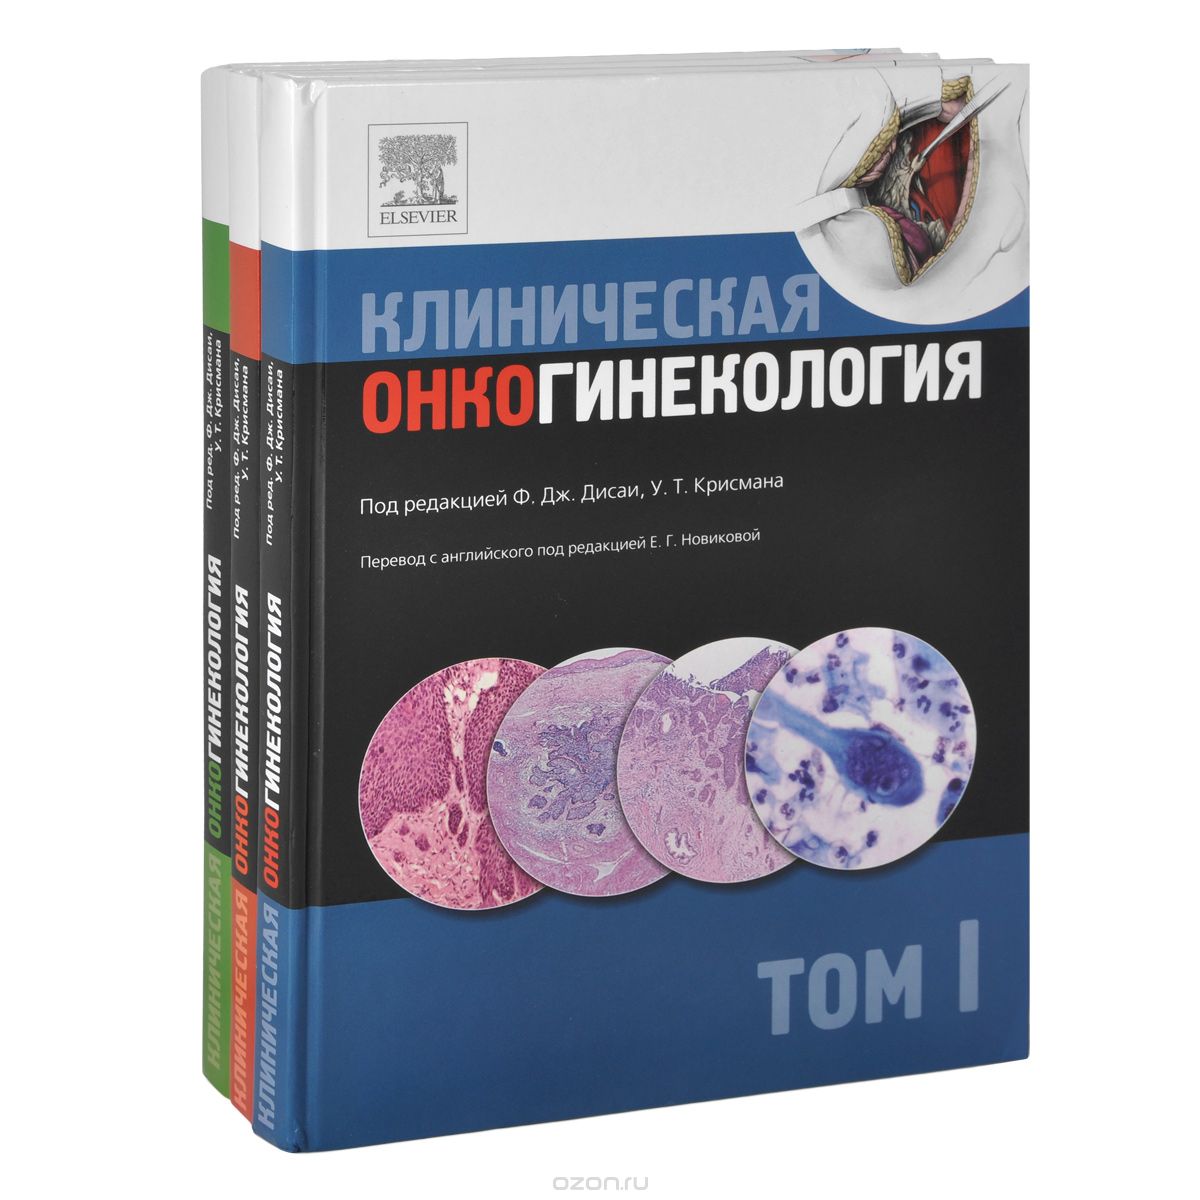 Скачать книгу "Клиническая онкогинекология. В 3 томах (комплект из 3 книг)"